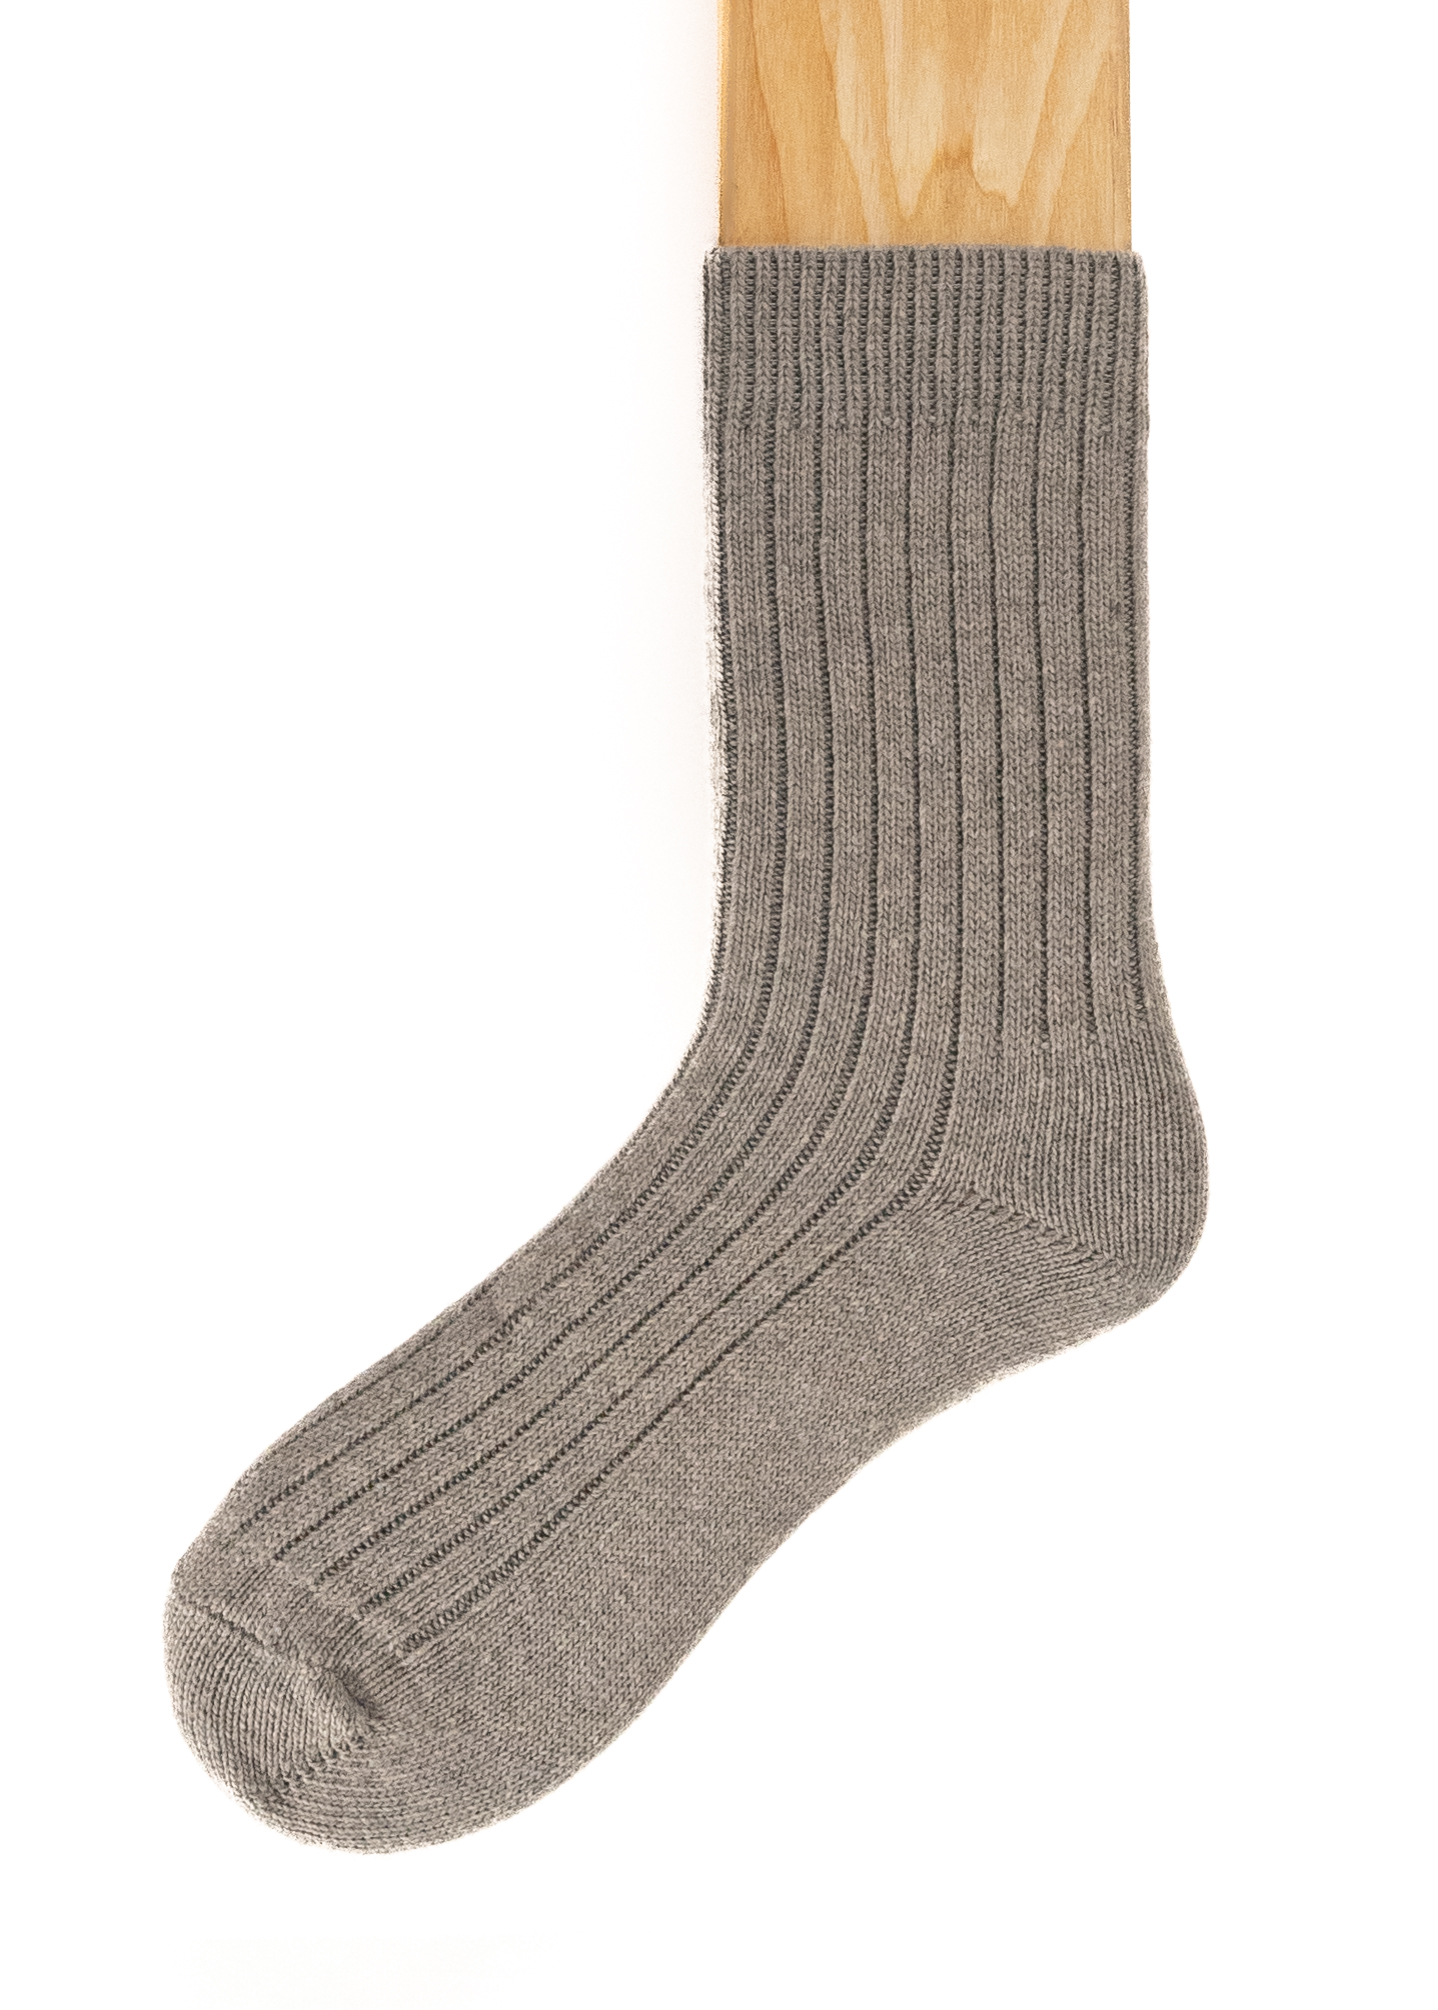 Connemara Socks - Wool Blend - Luxury Irish Gift - Merino - M09-22 - Size EU 37-41 - Light Grey